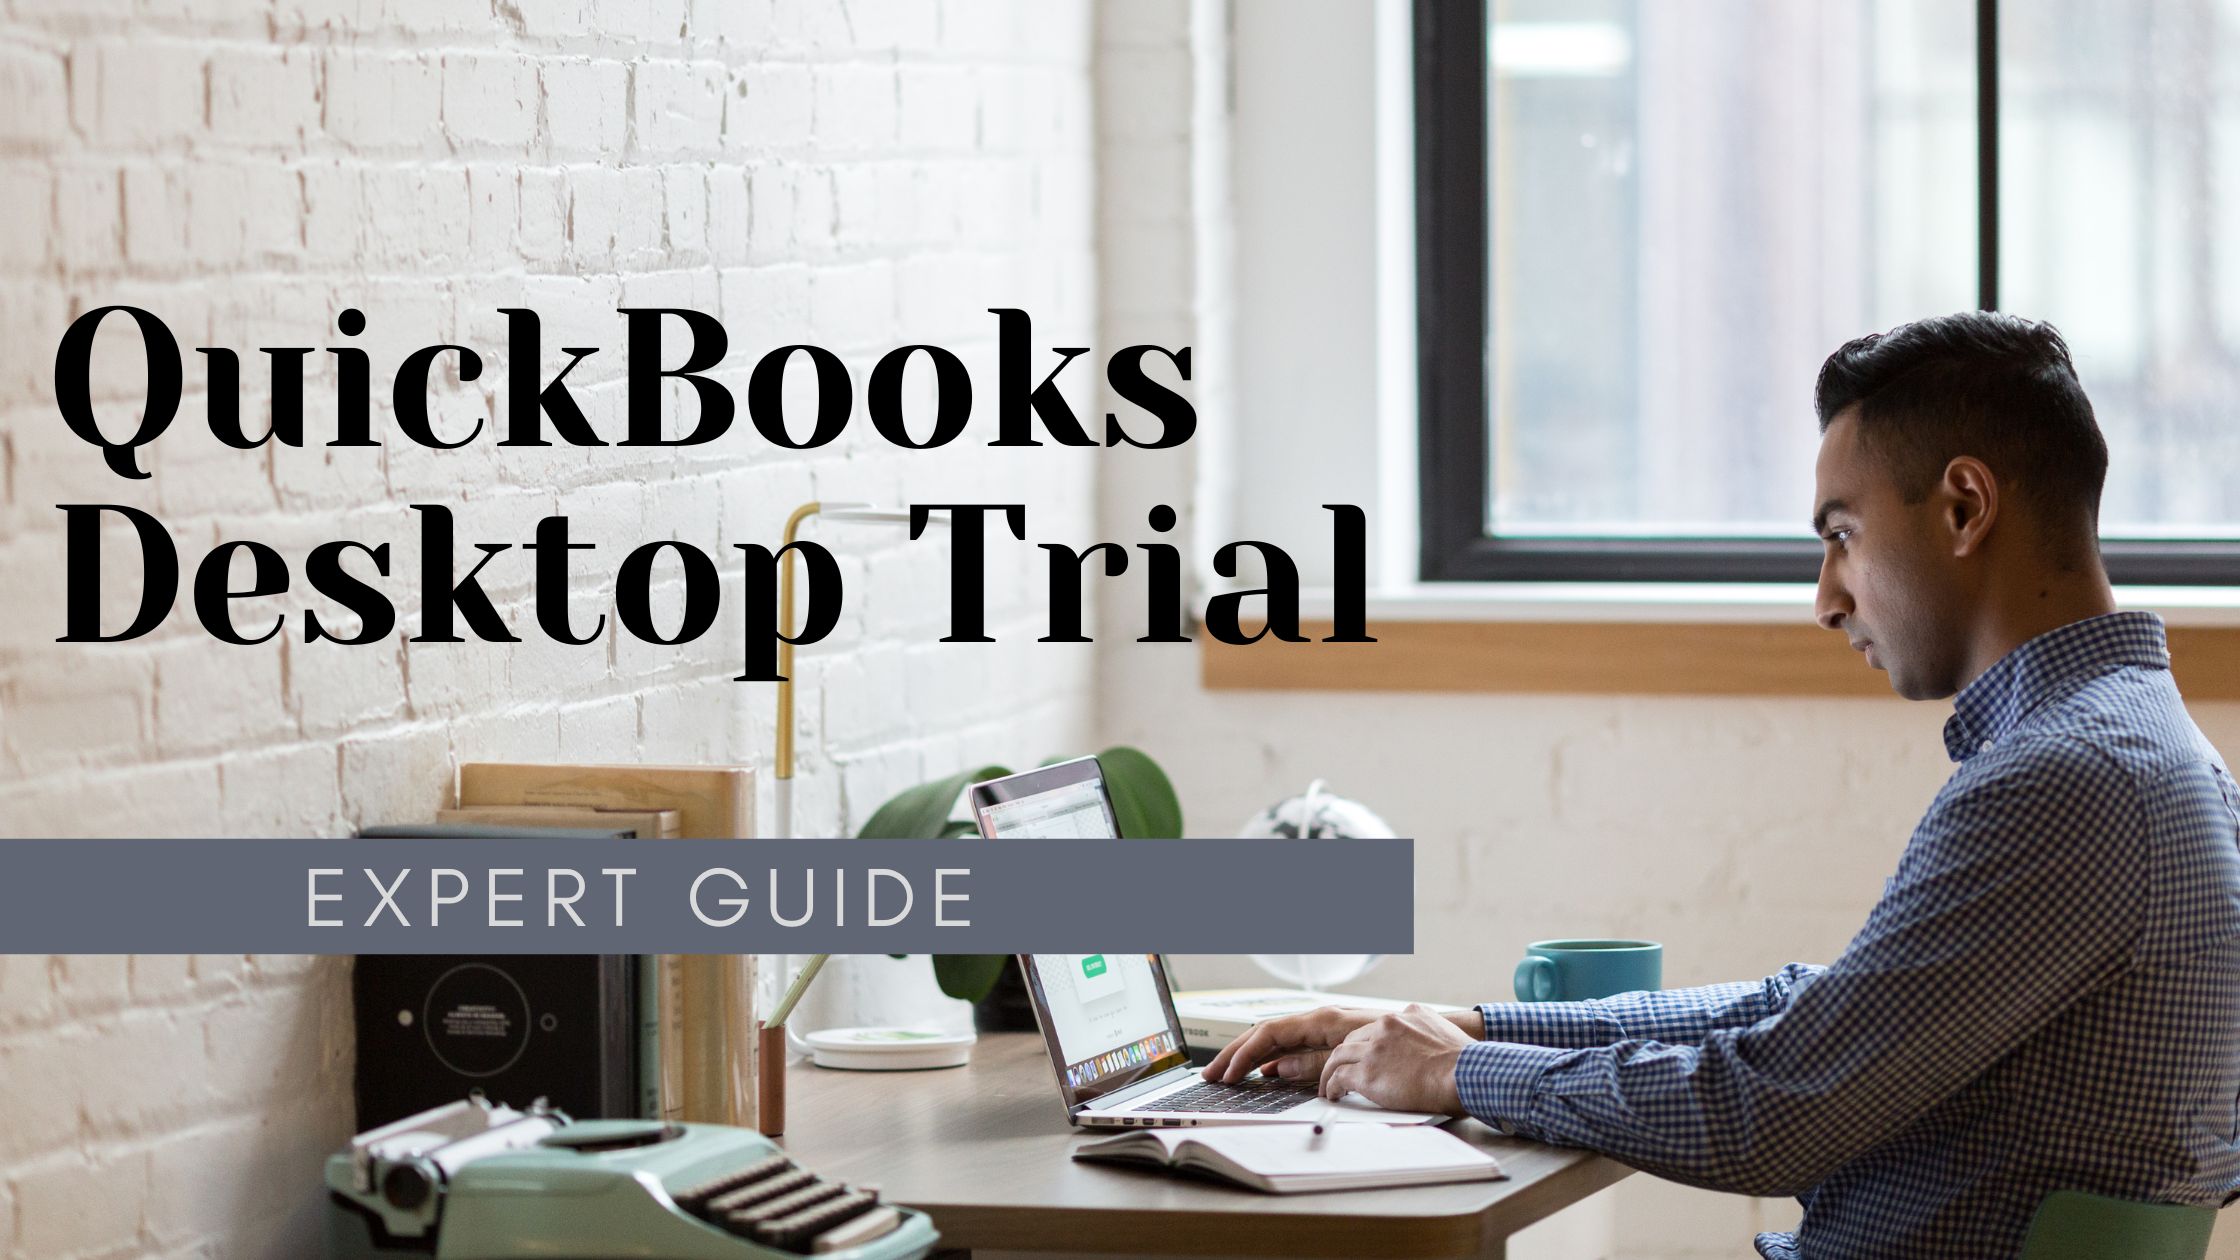 QuickBooks Desktop Trials